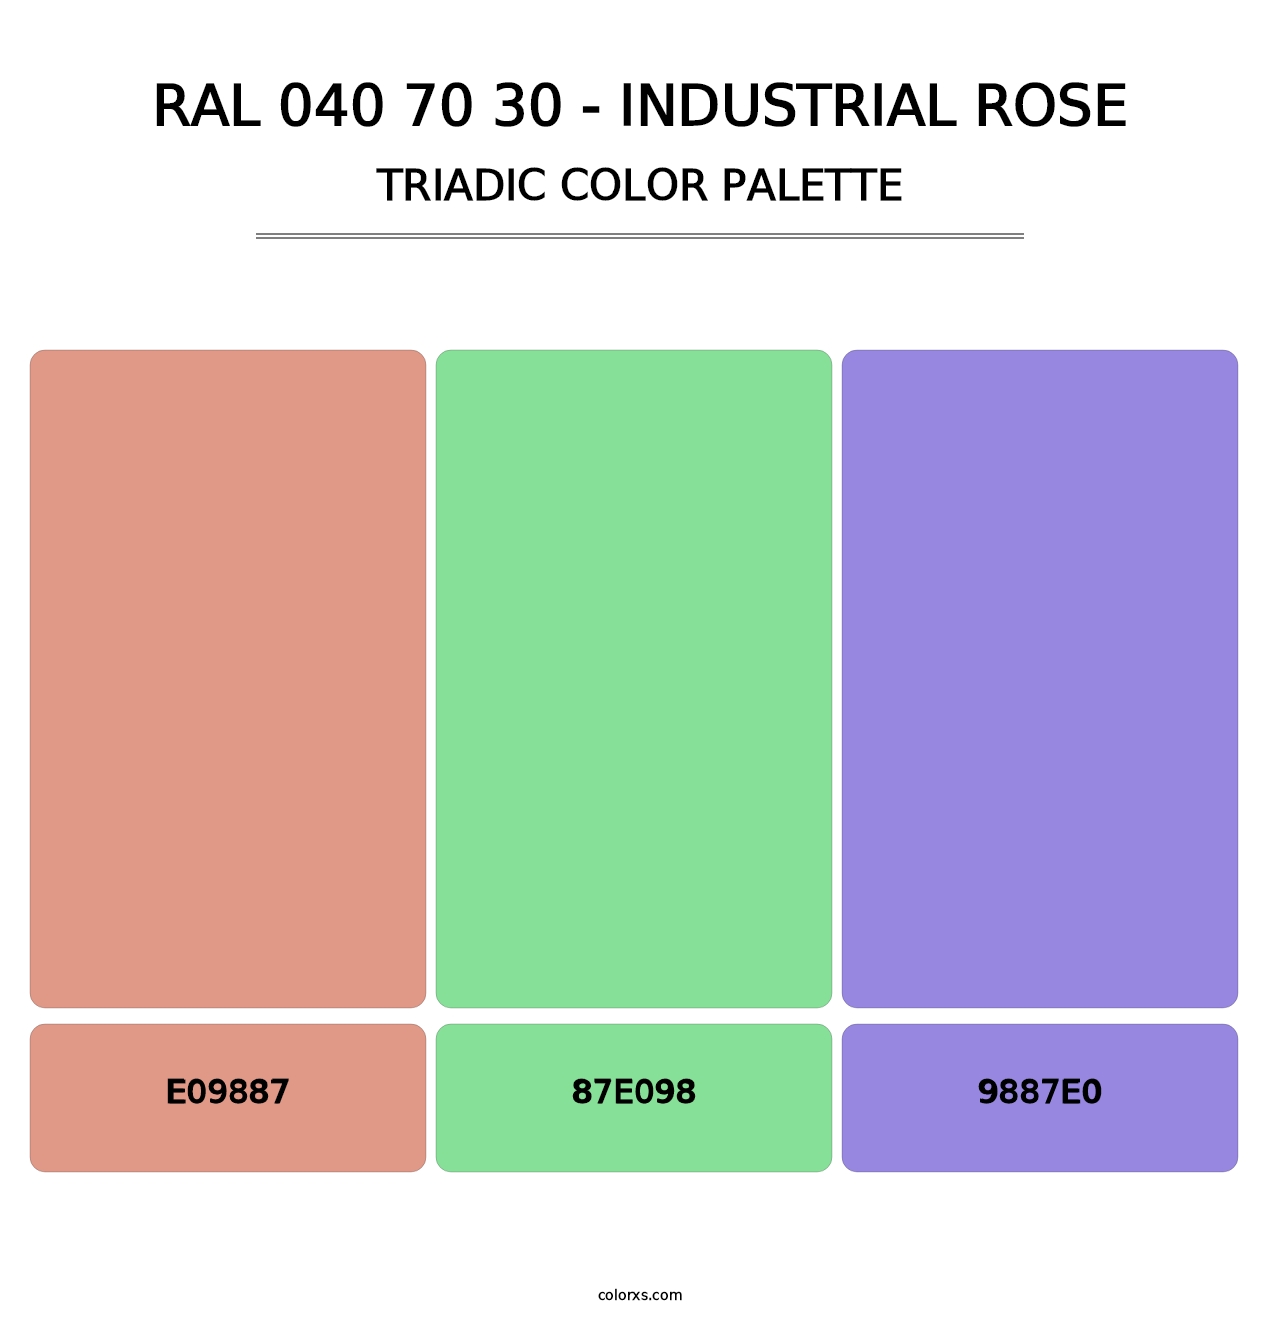 RAL 040 70 30 - Industrial Rose - Triadic Color Palette